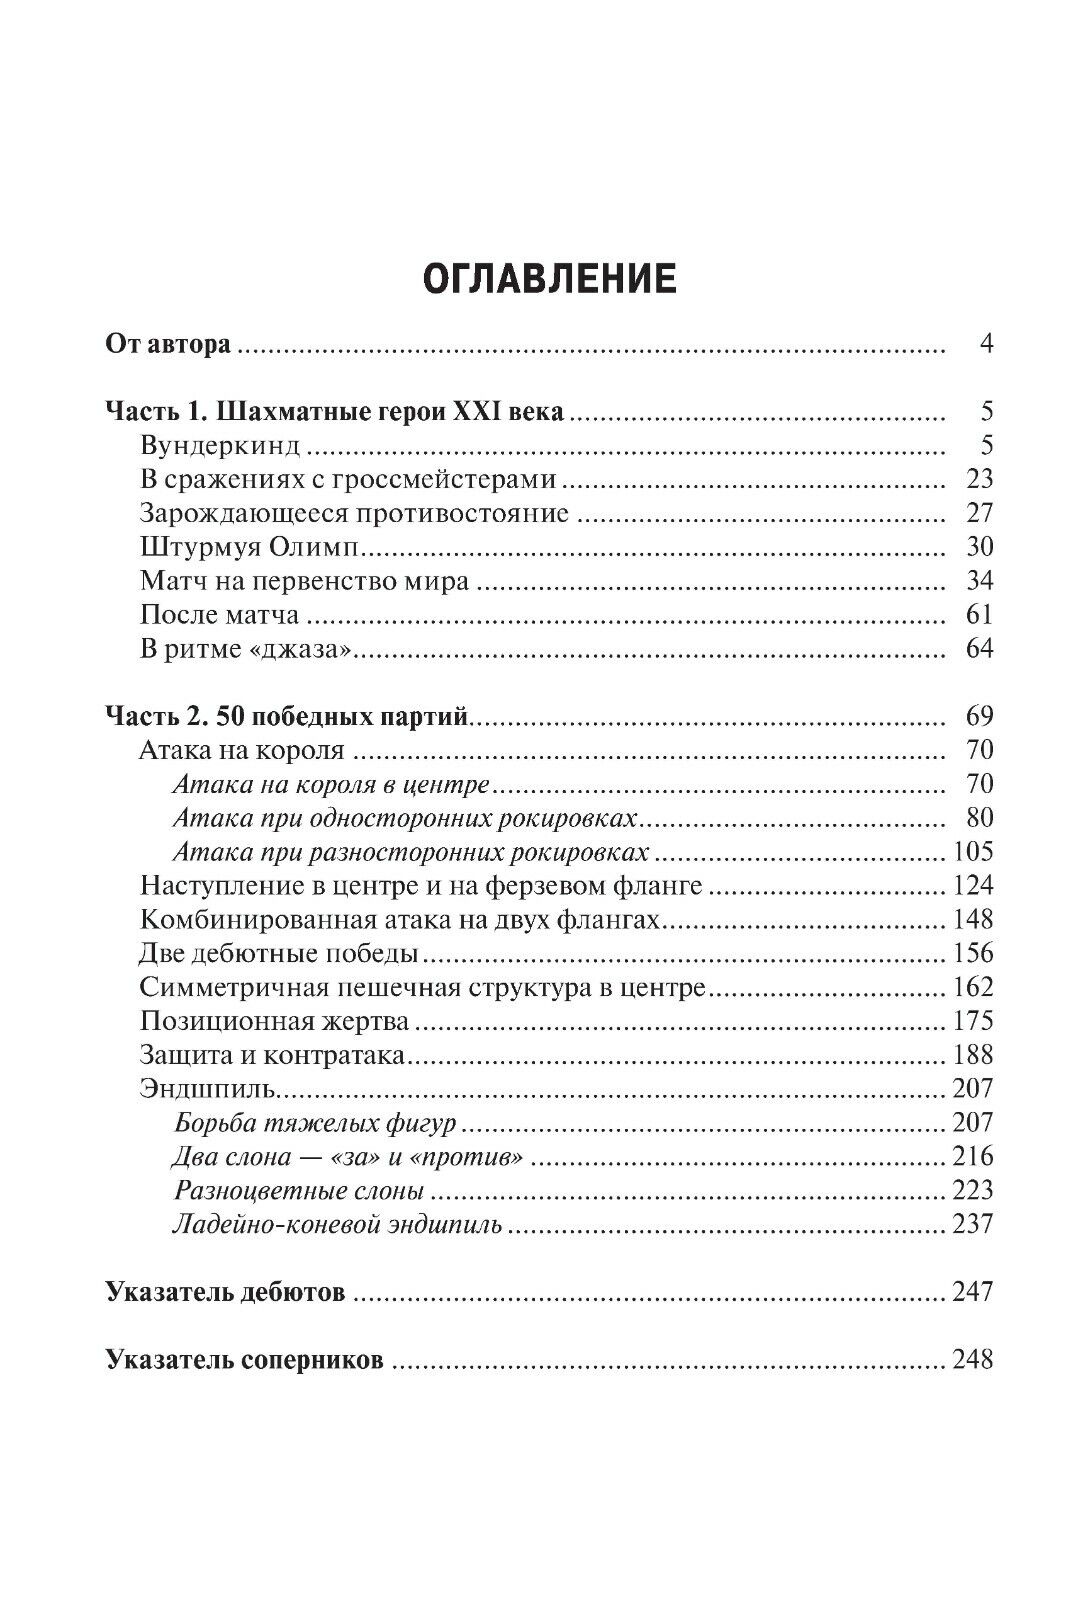 11543.Russian Chess Book: Sergey Karyakin. School of Chess Skills. 2020